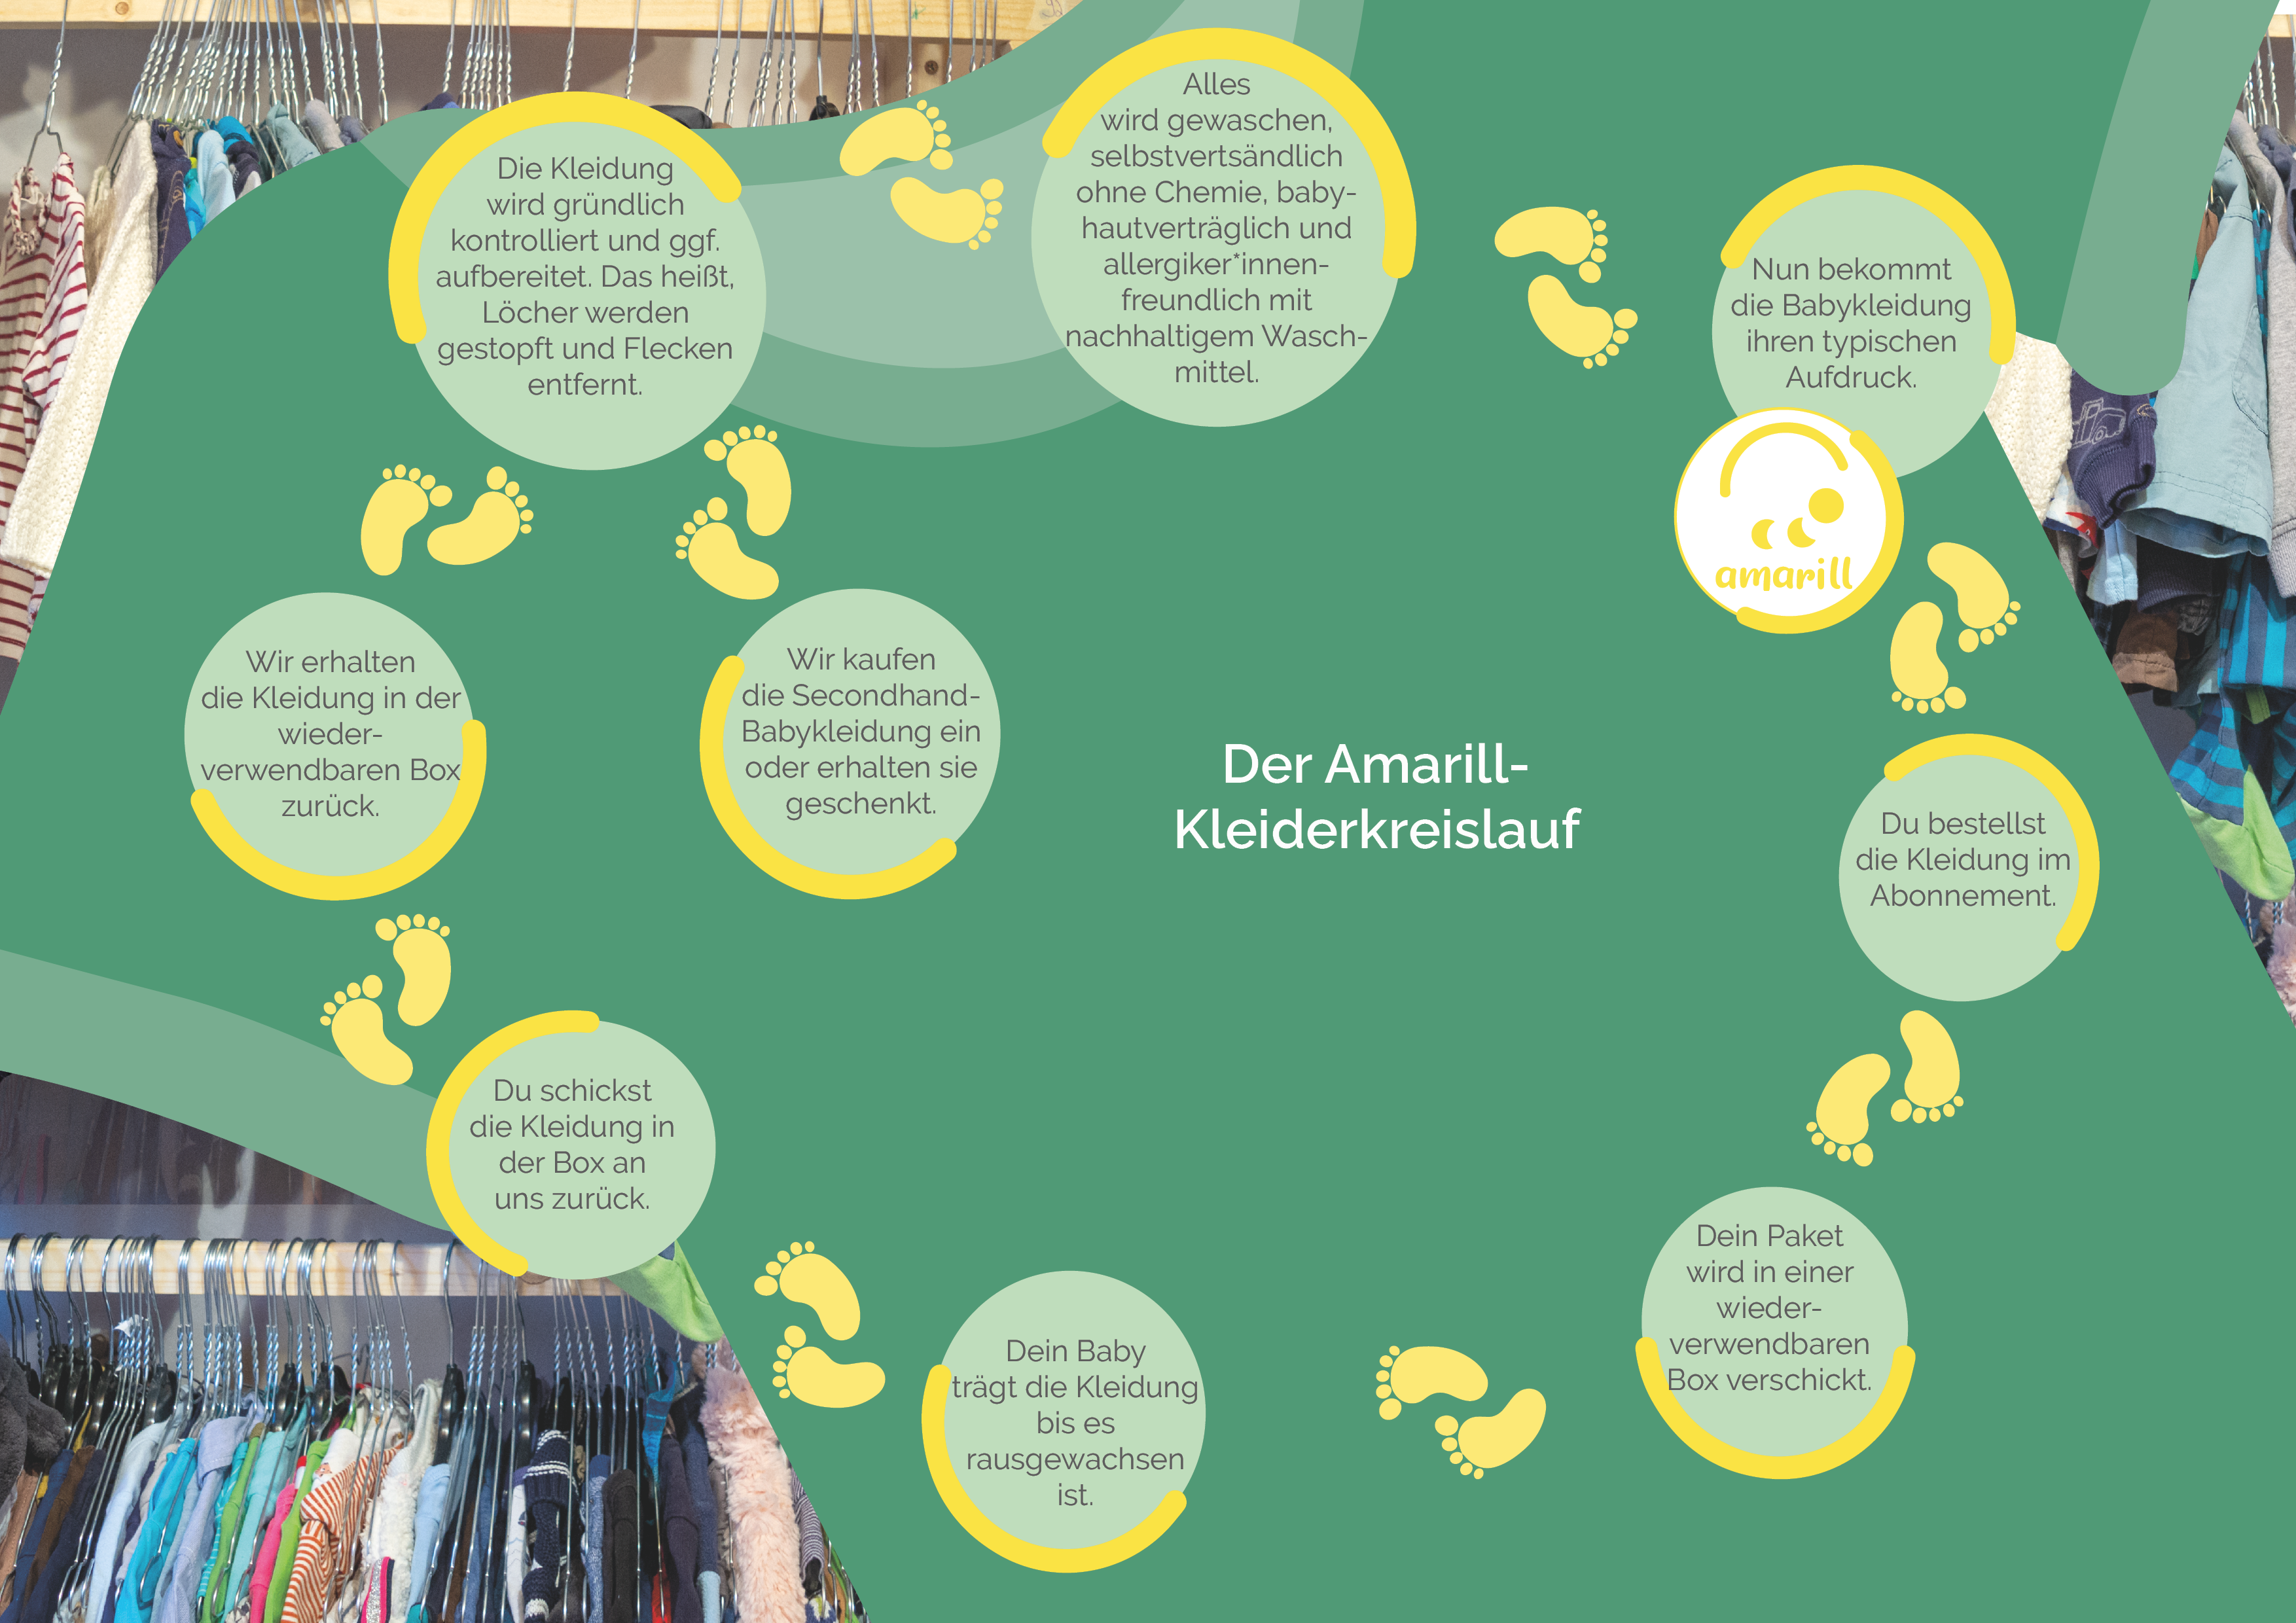 amarill-secondhand-babykleidung-kleiderkreislauf-nachhaltig-infografik